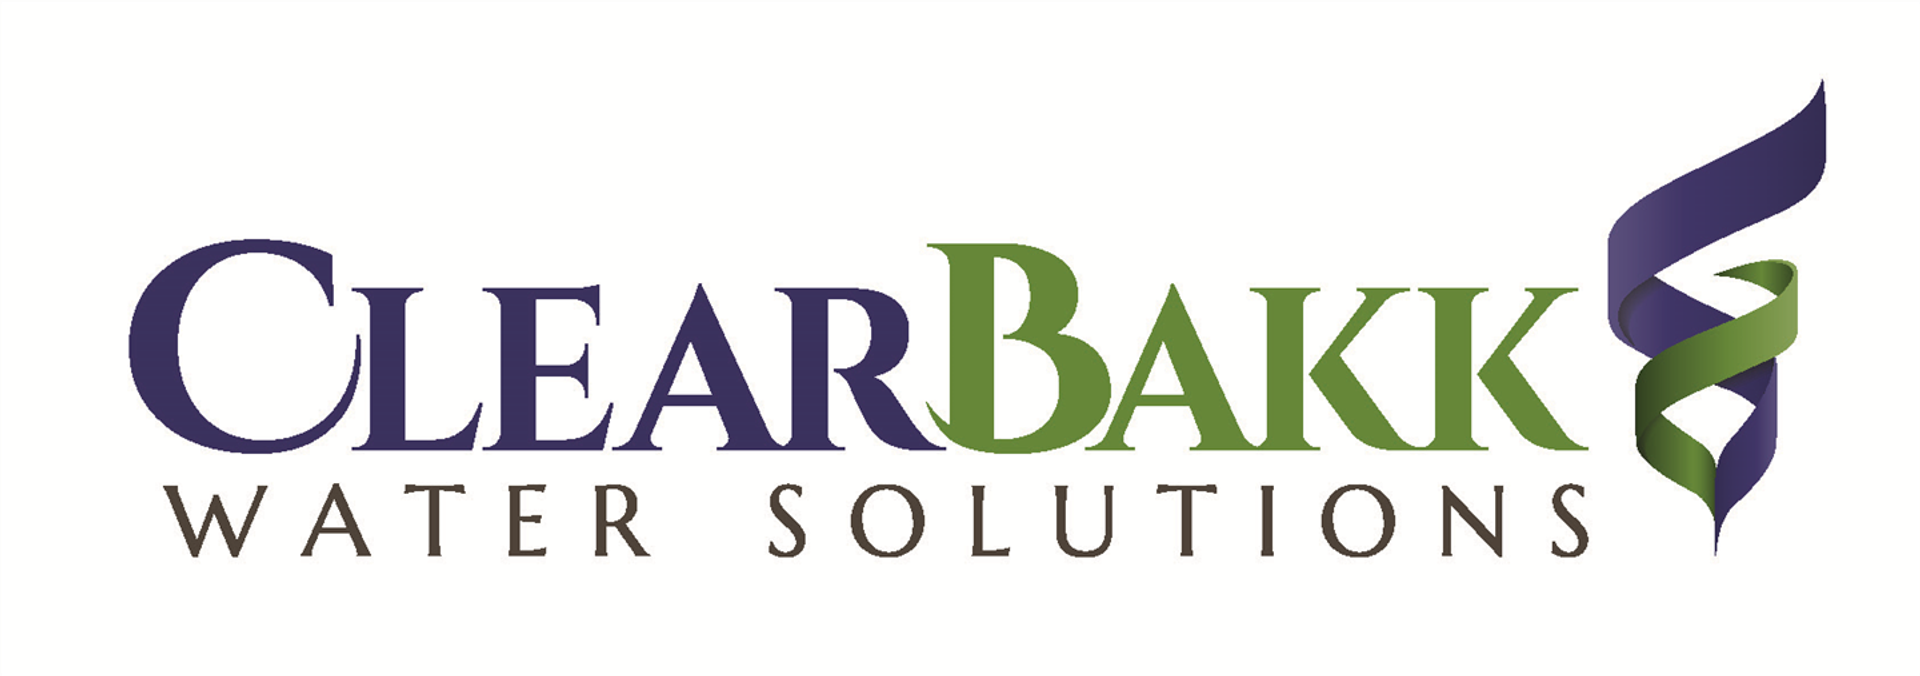 ClearBakk Water Solutions Ltd